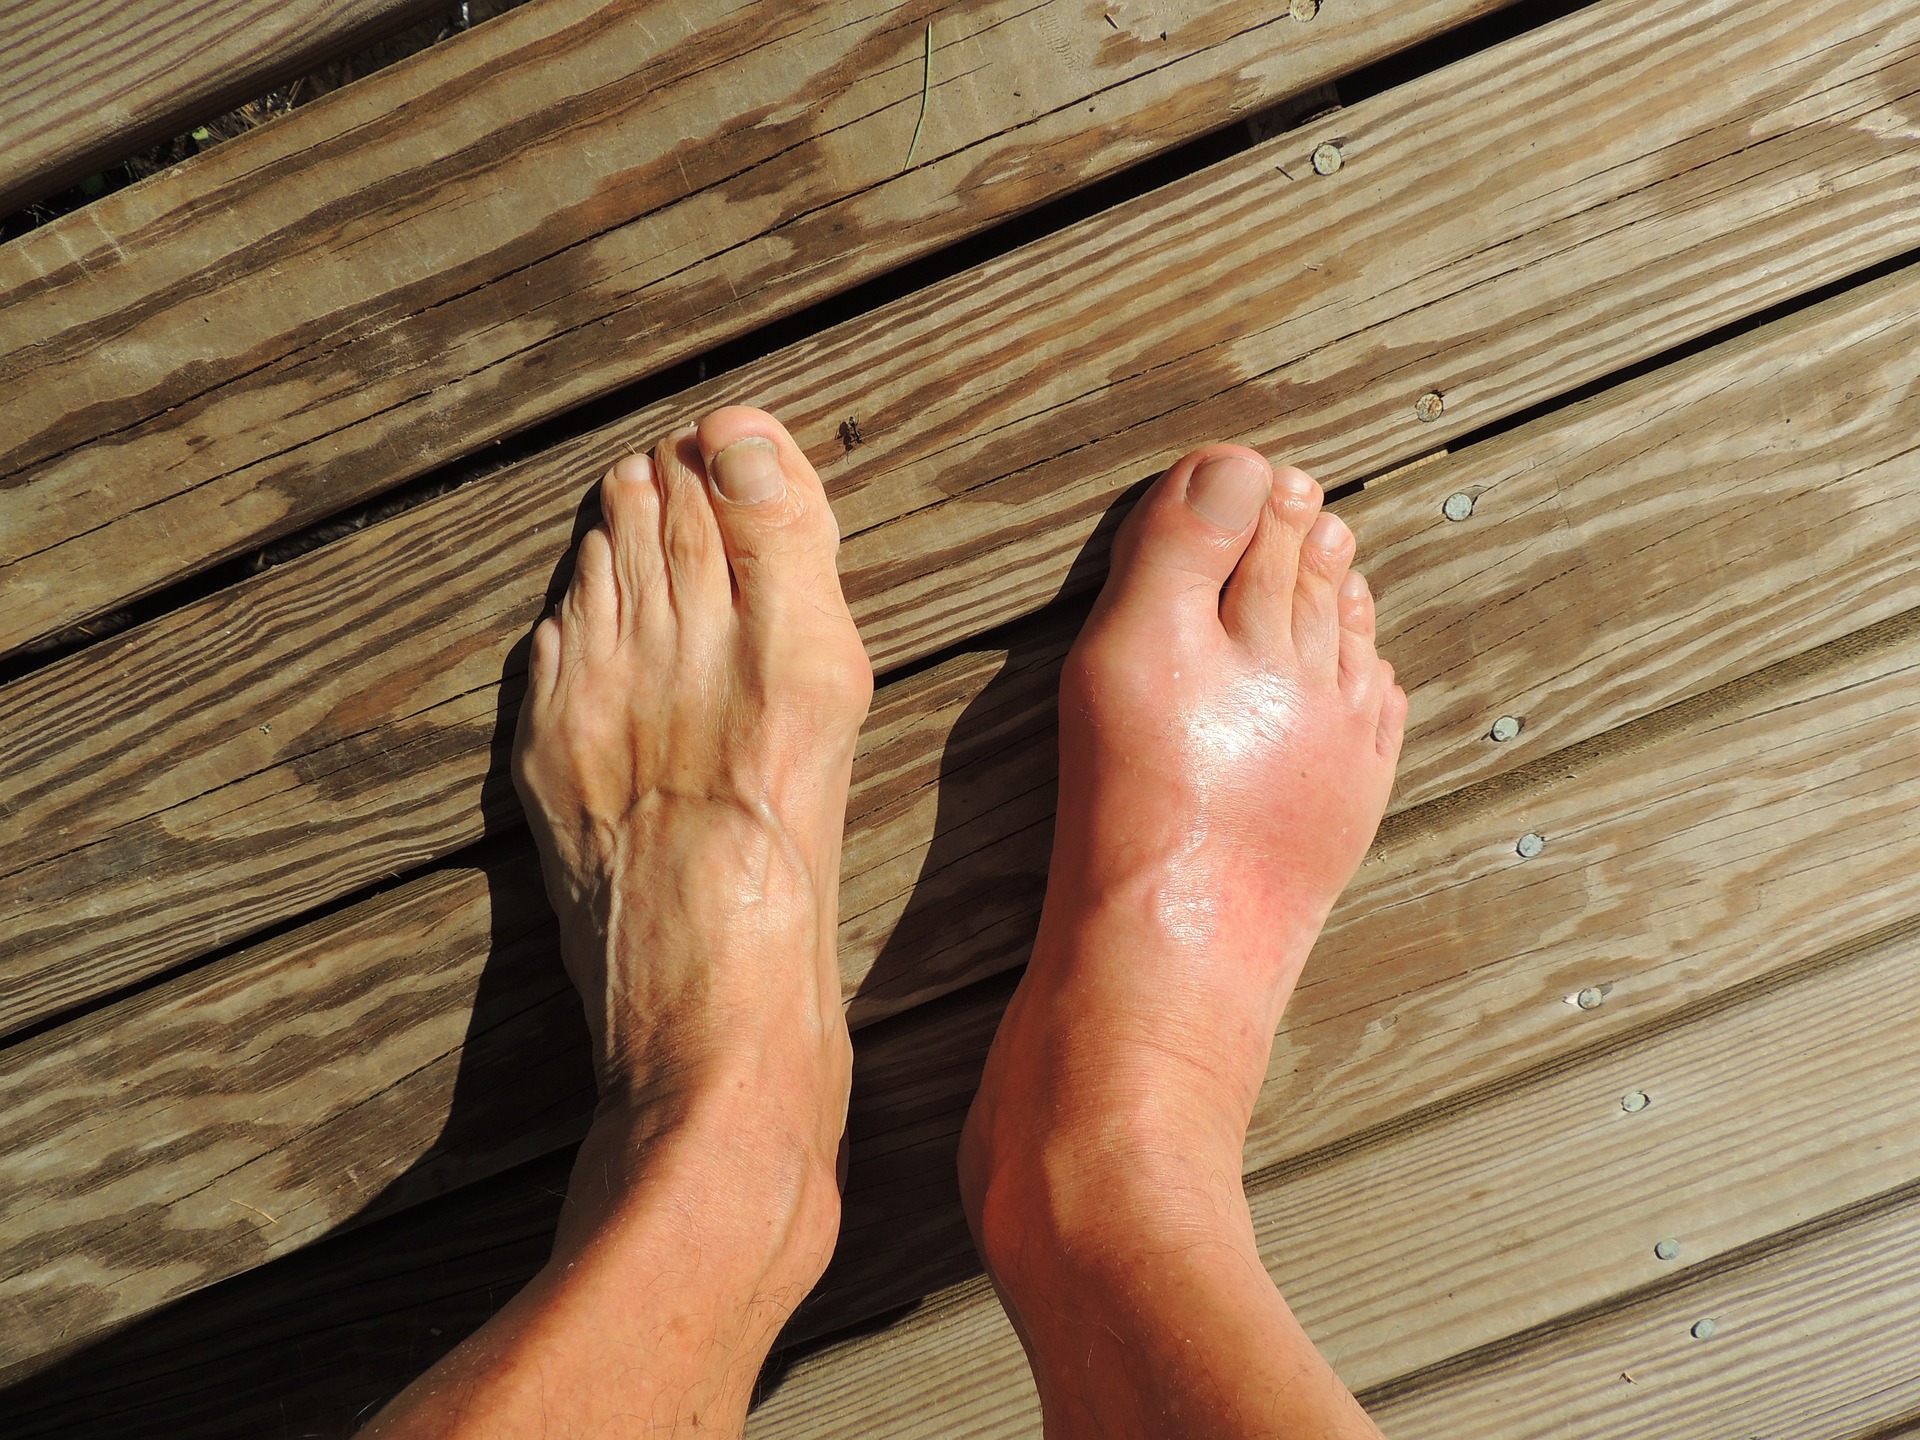 양쪽 발을 비교를 했을 때&#44; 통풍으로 인한 염증으로 오른 쪽 발등과 발가락이 왼쪽에 비해서 월등히 붓고&#44; 벌겋게 부어 있는 통풍 환자의 발 사진